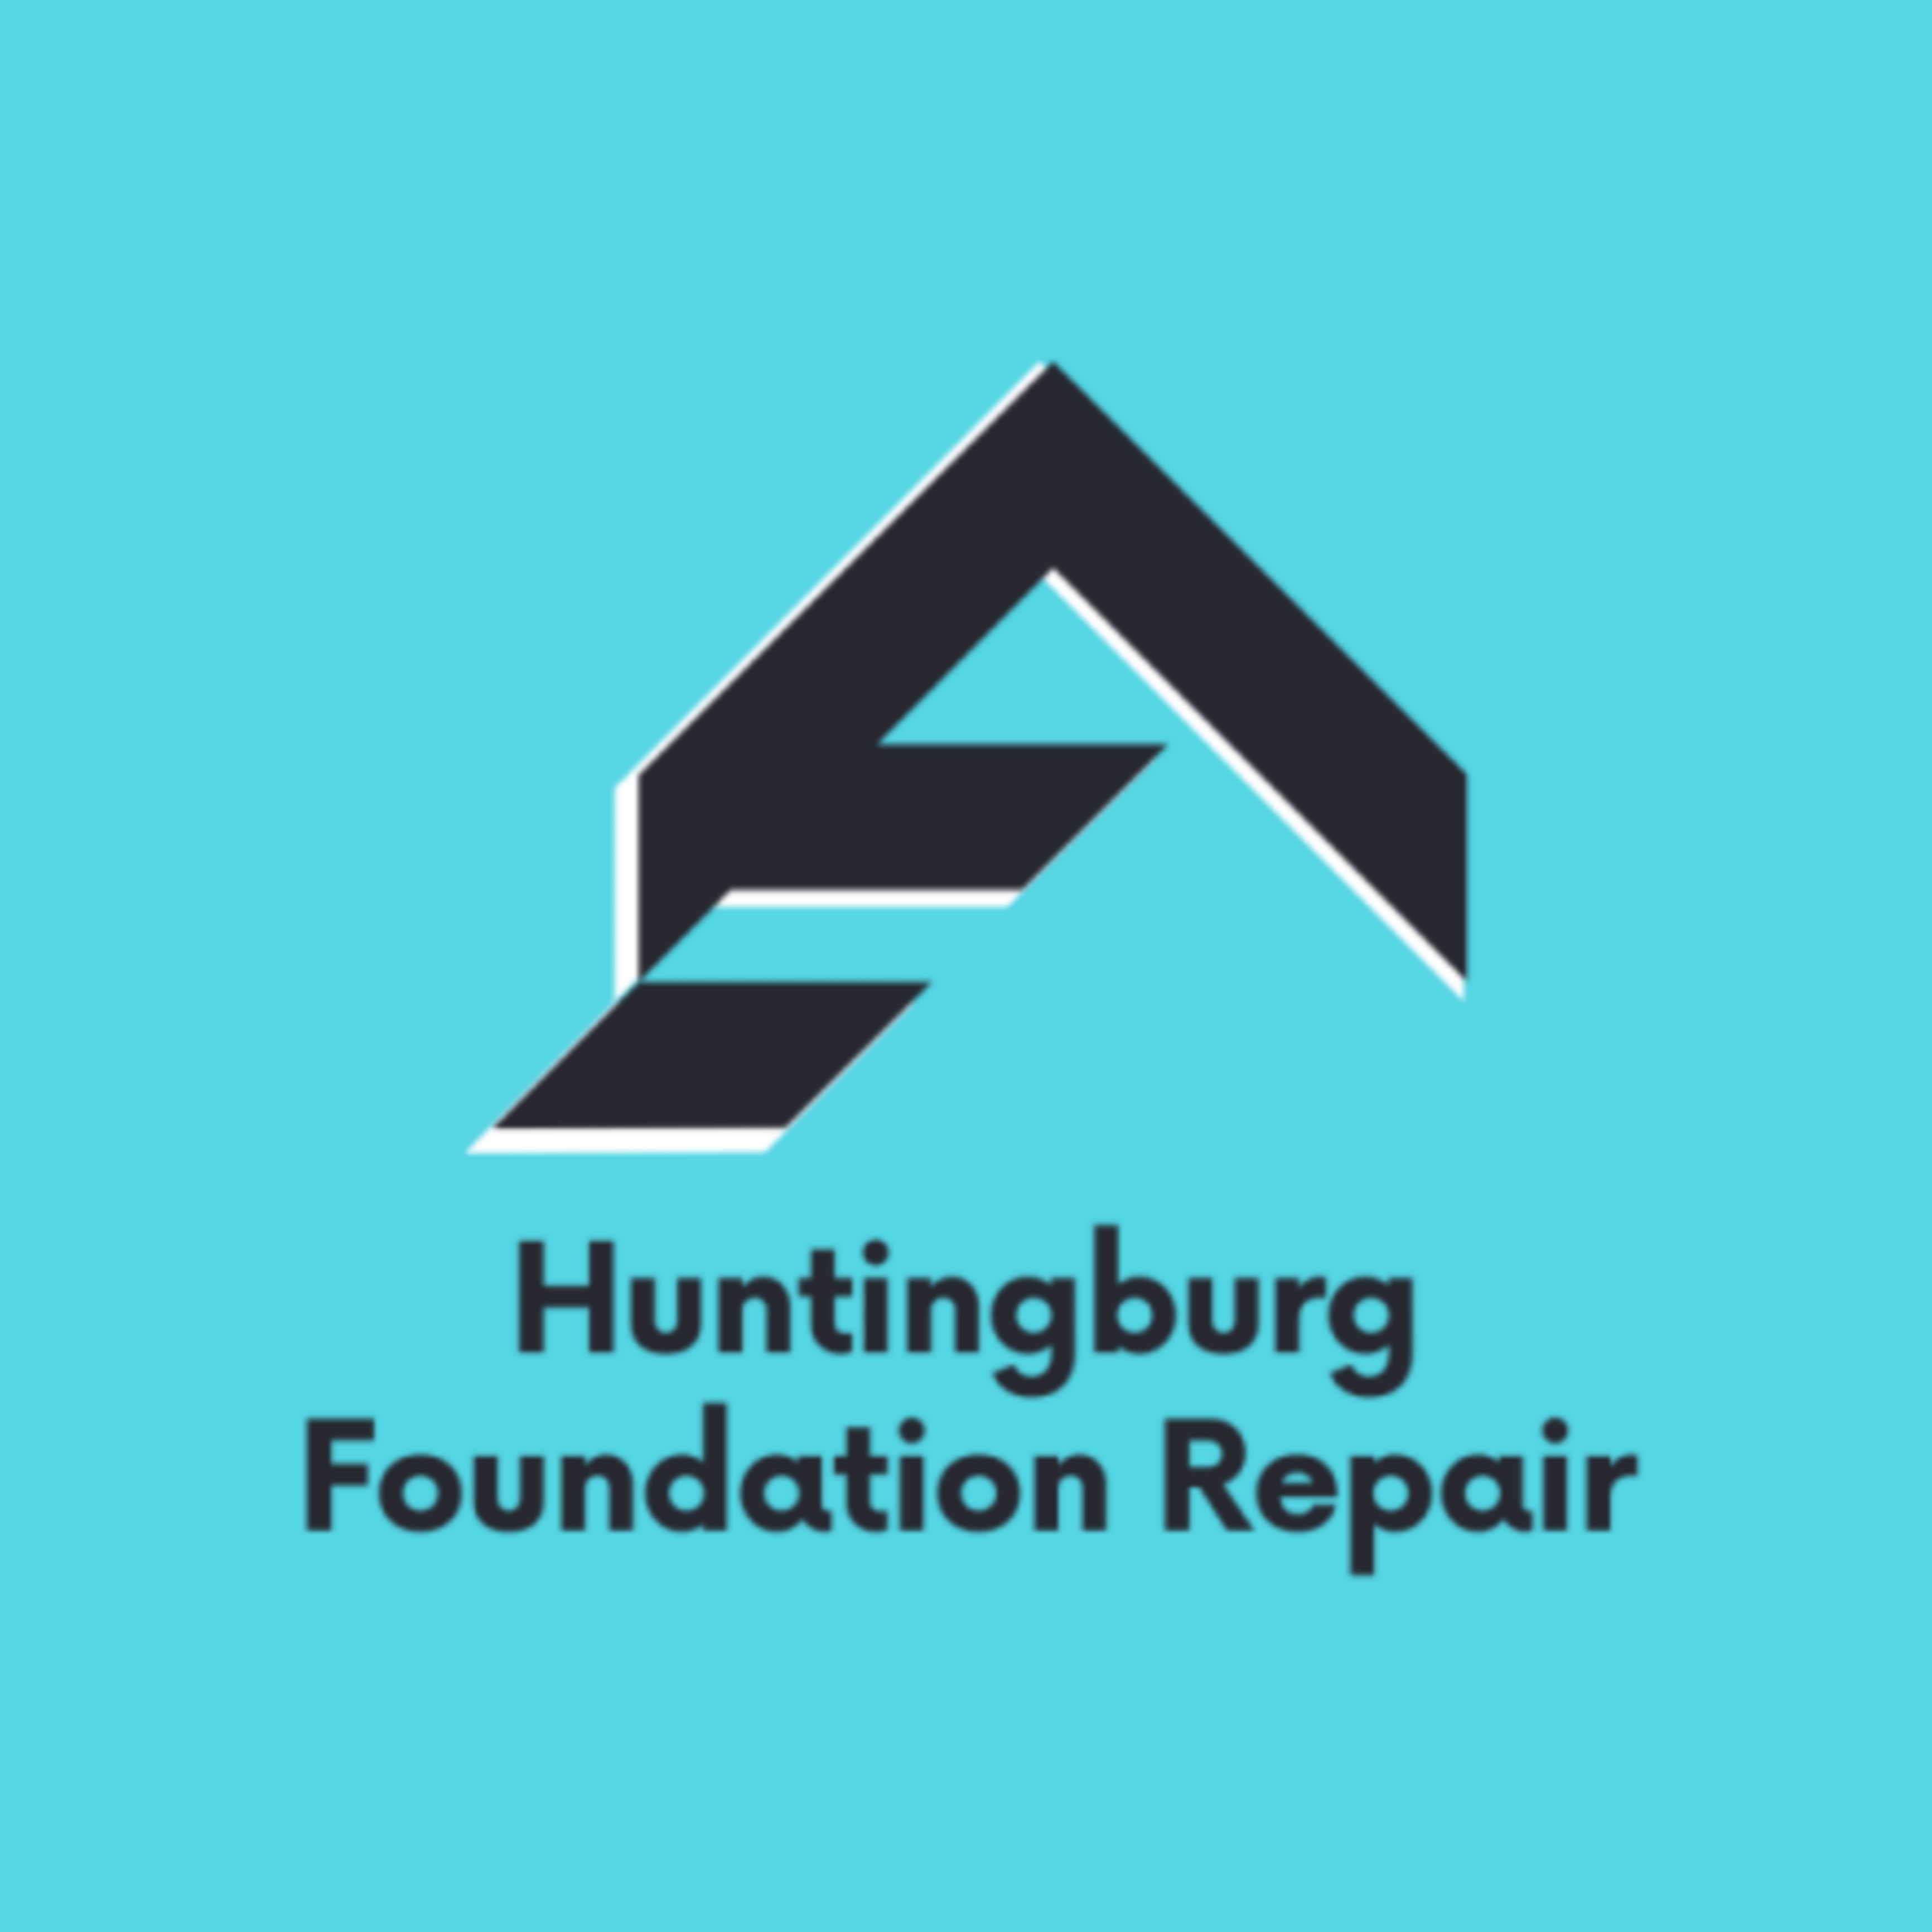 Huntingburg Foundation Repair's Logo